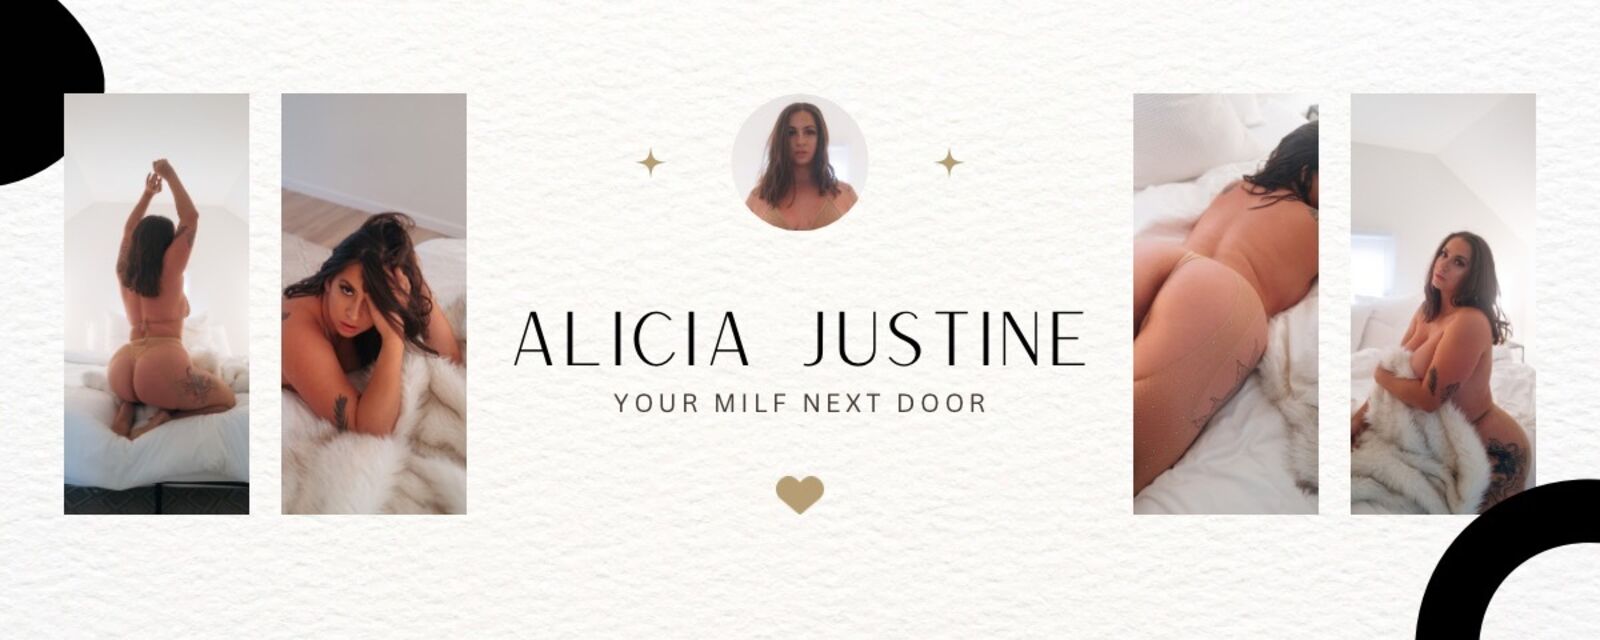 See Alicia Justine profile